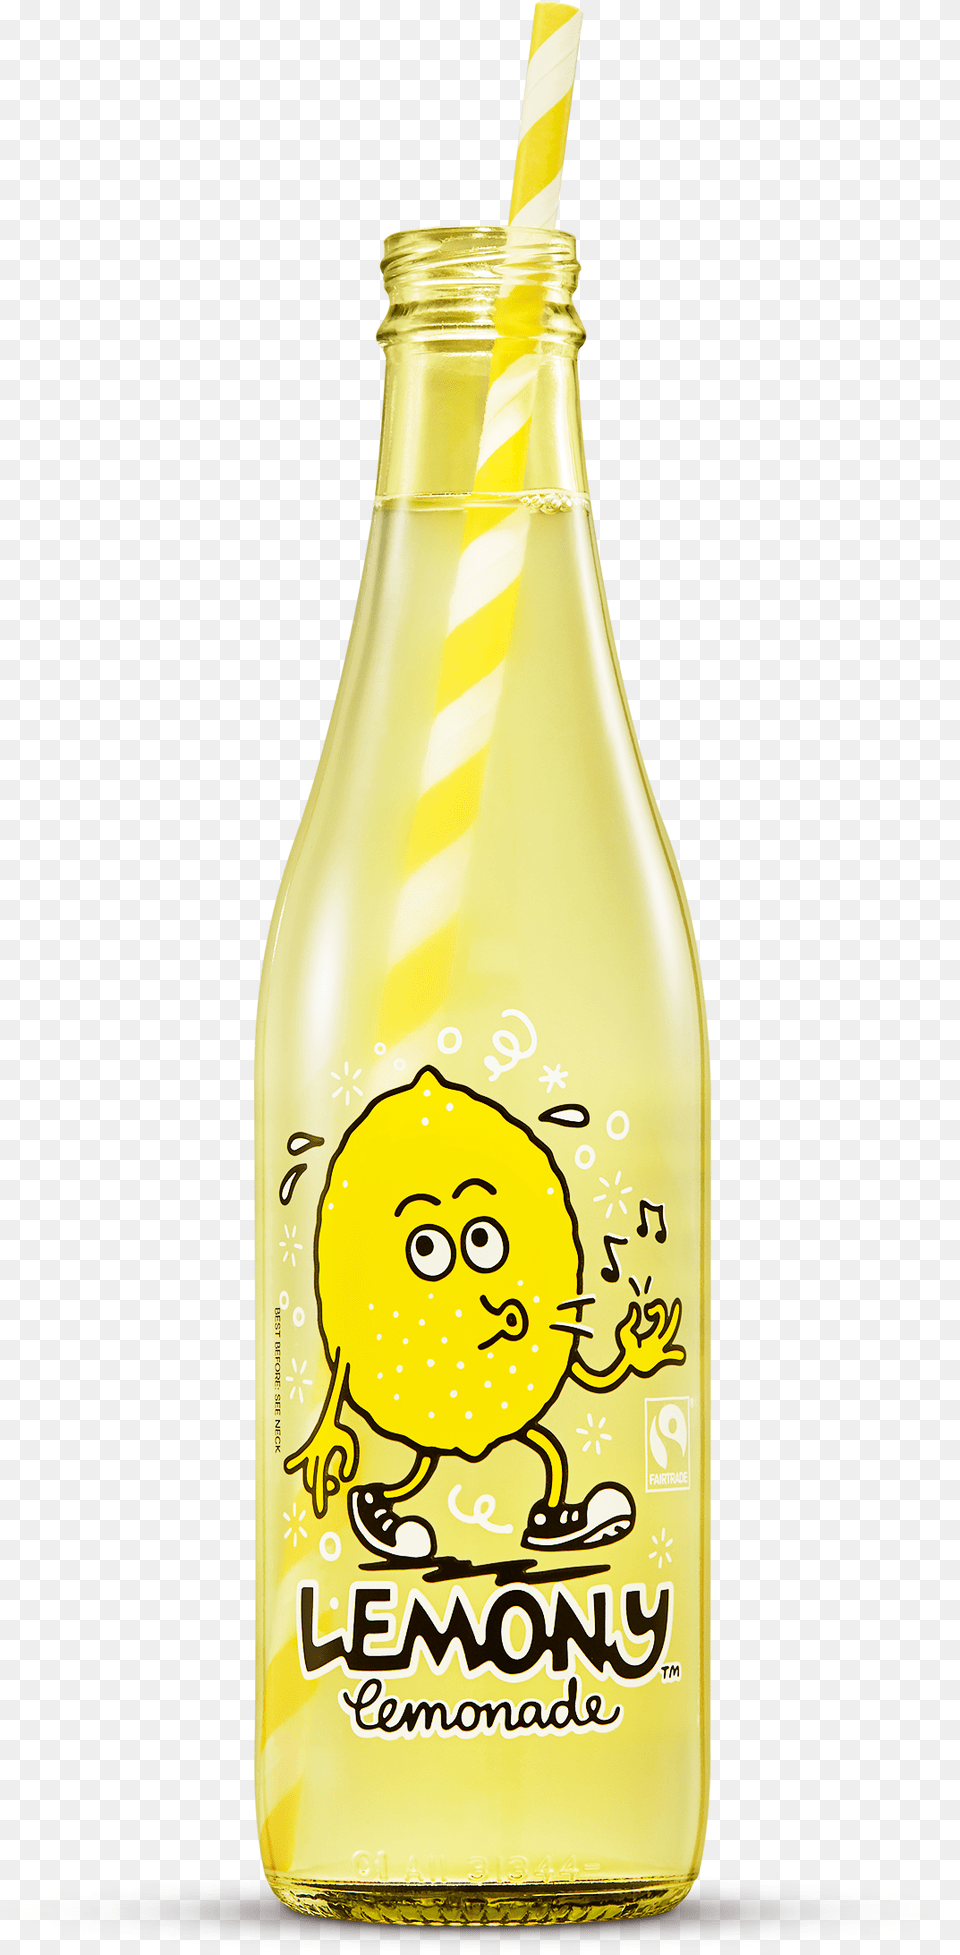 Glass Bottle, Soda, Pop Bottle, Beverage, Lemonade Free Transparent Png